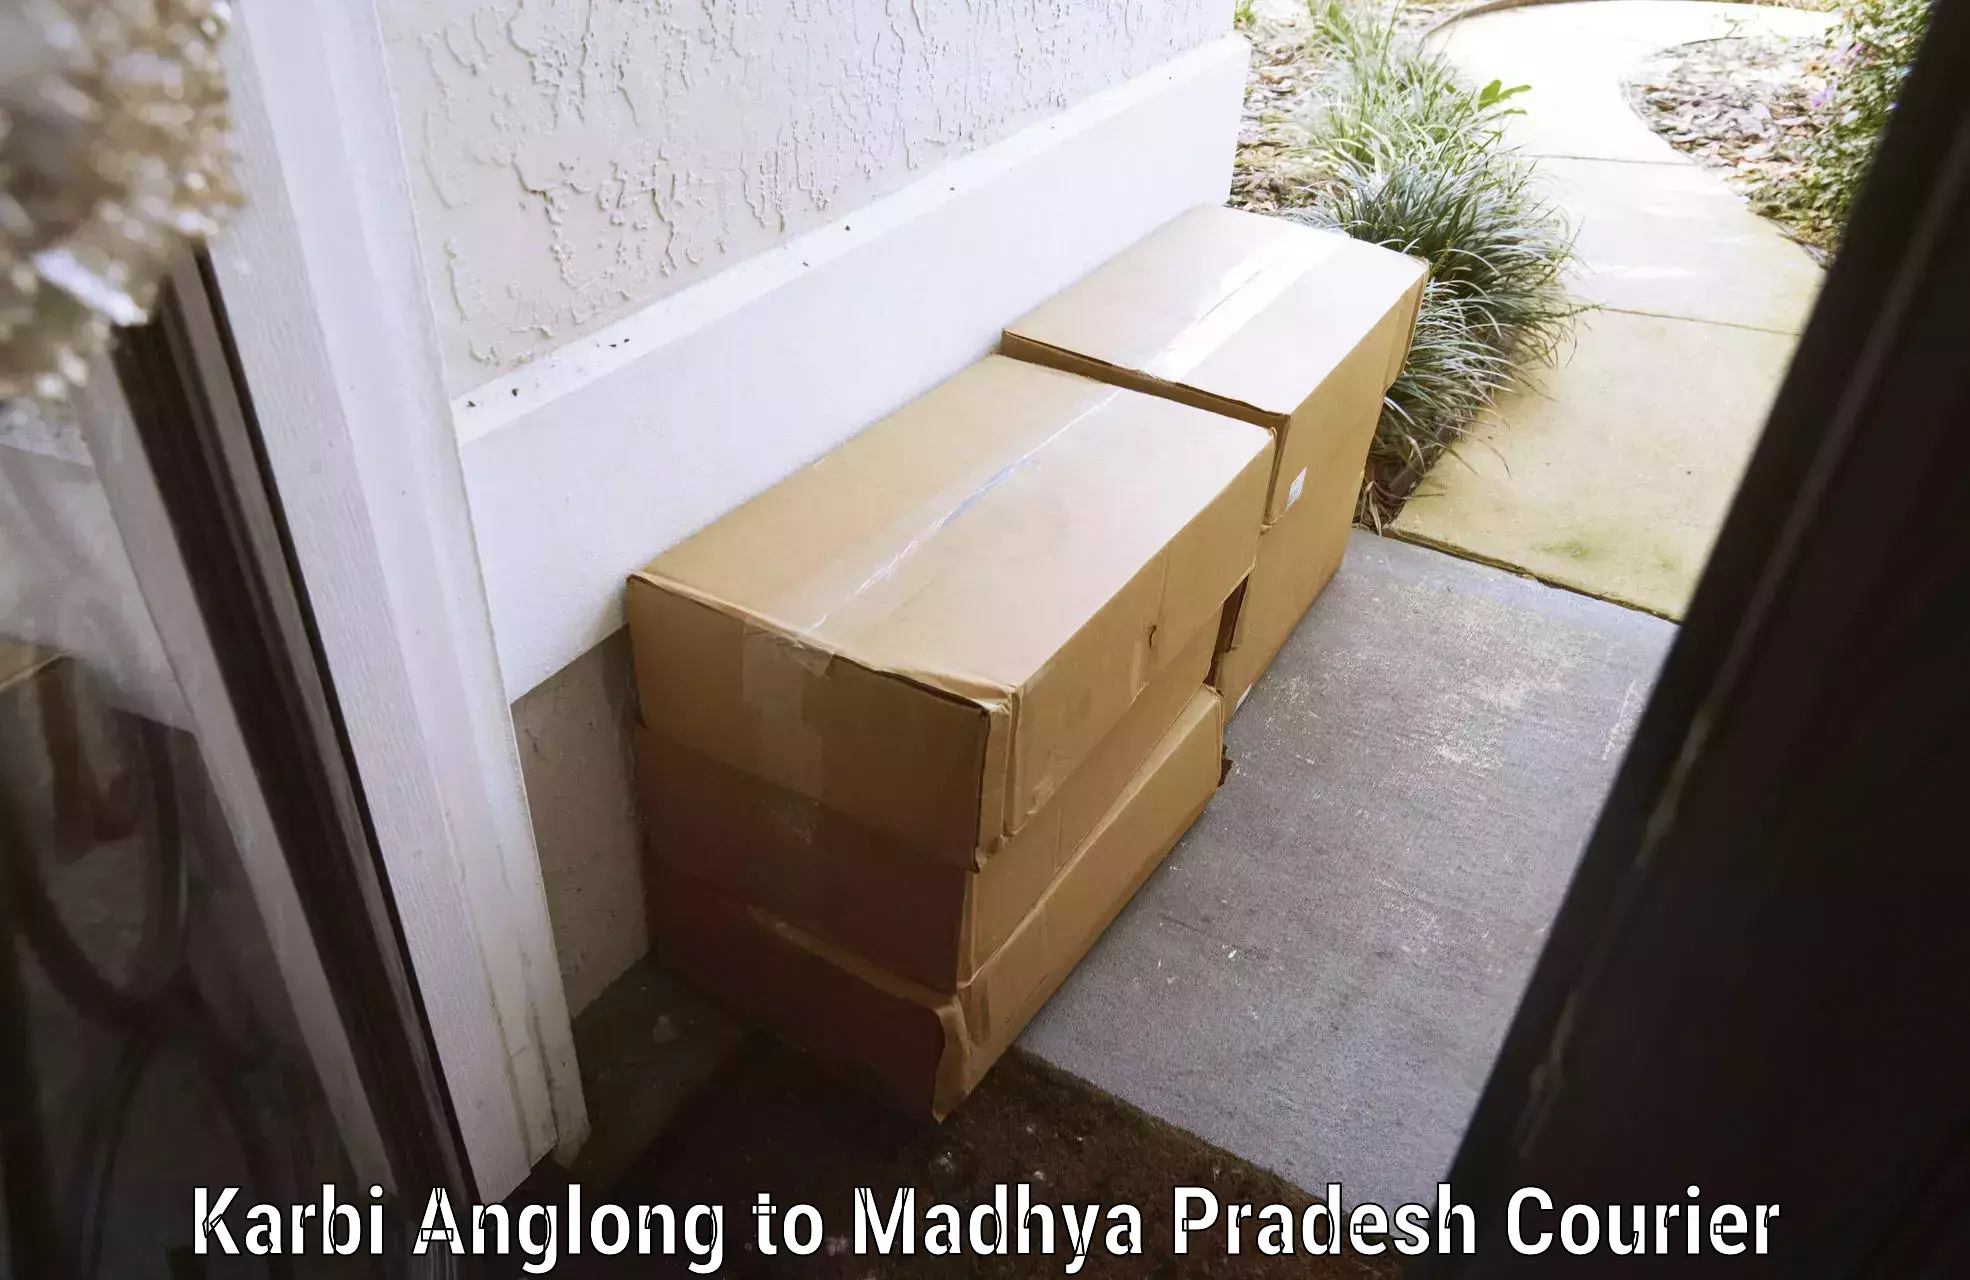 Baggage courier service Karbi Anglong to Madhya Pradesh